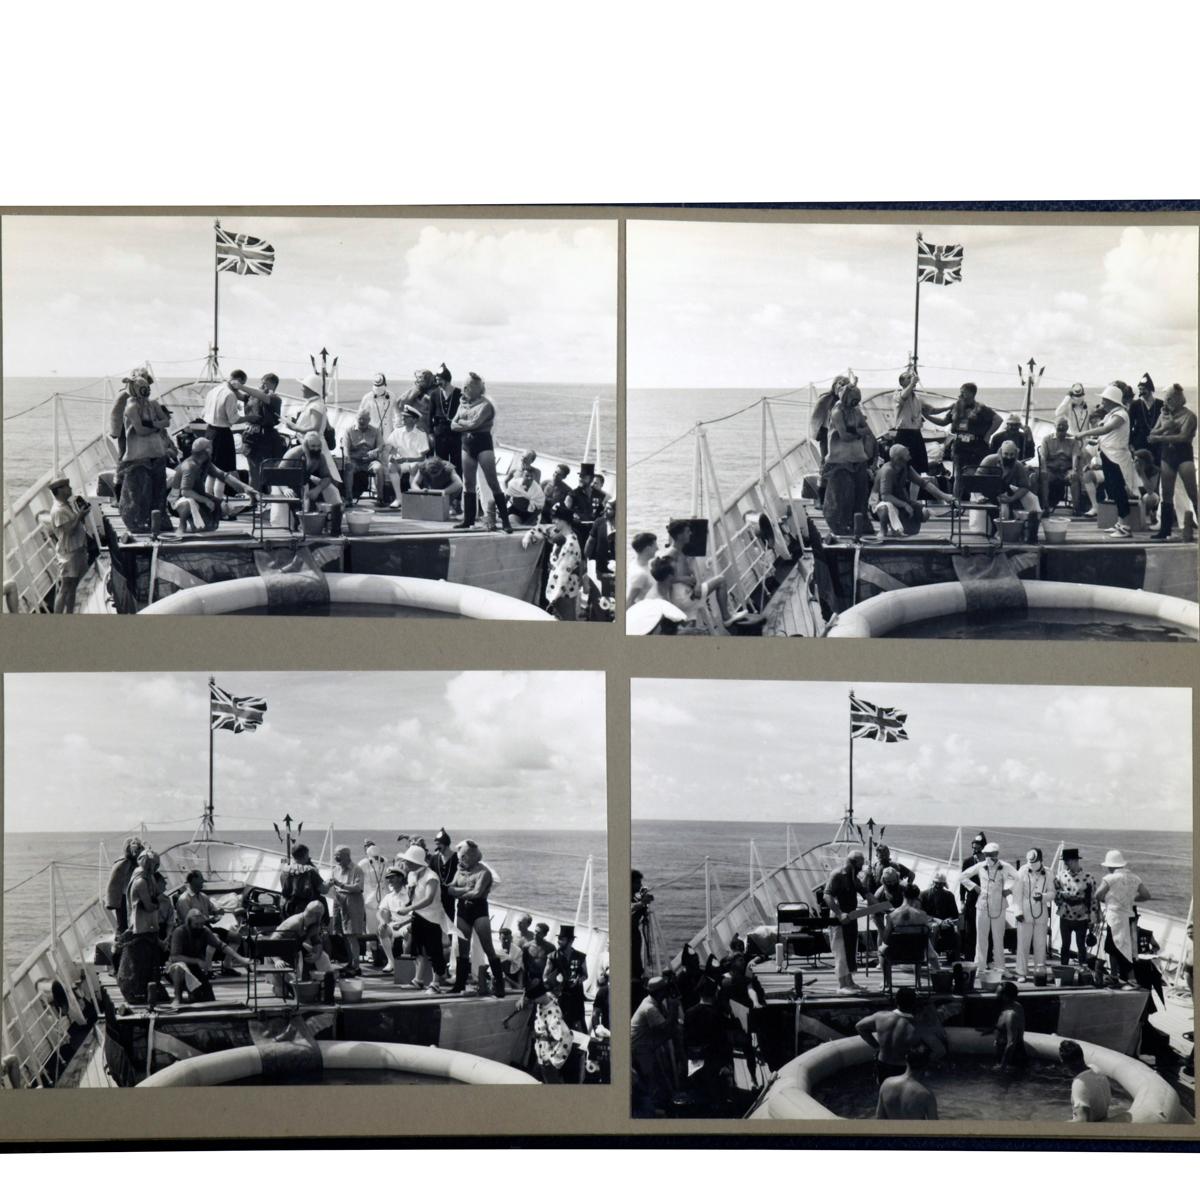 Duke of Edinburgh's World tour 1959 on HM Yacht Britannia, un fascinant document photographique de la visite du Duc à de nombreuses destinations entre Rangoon et Nassau, y compris la Birmanie, Singapour, Sandakan et l'île de Lanasi, avec 74